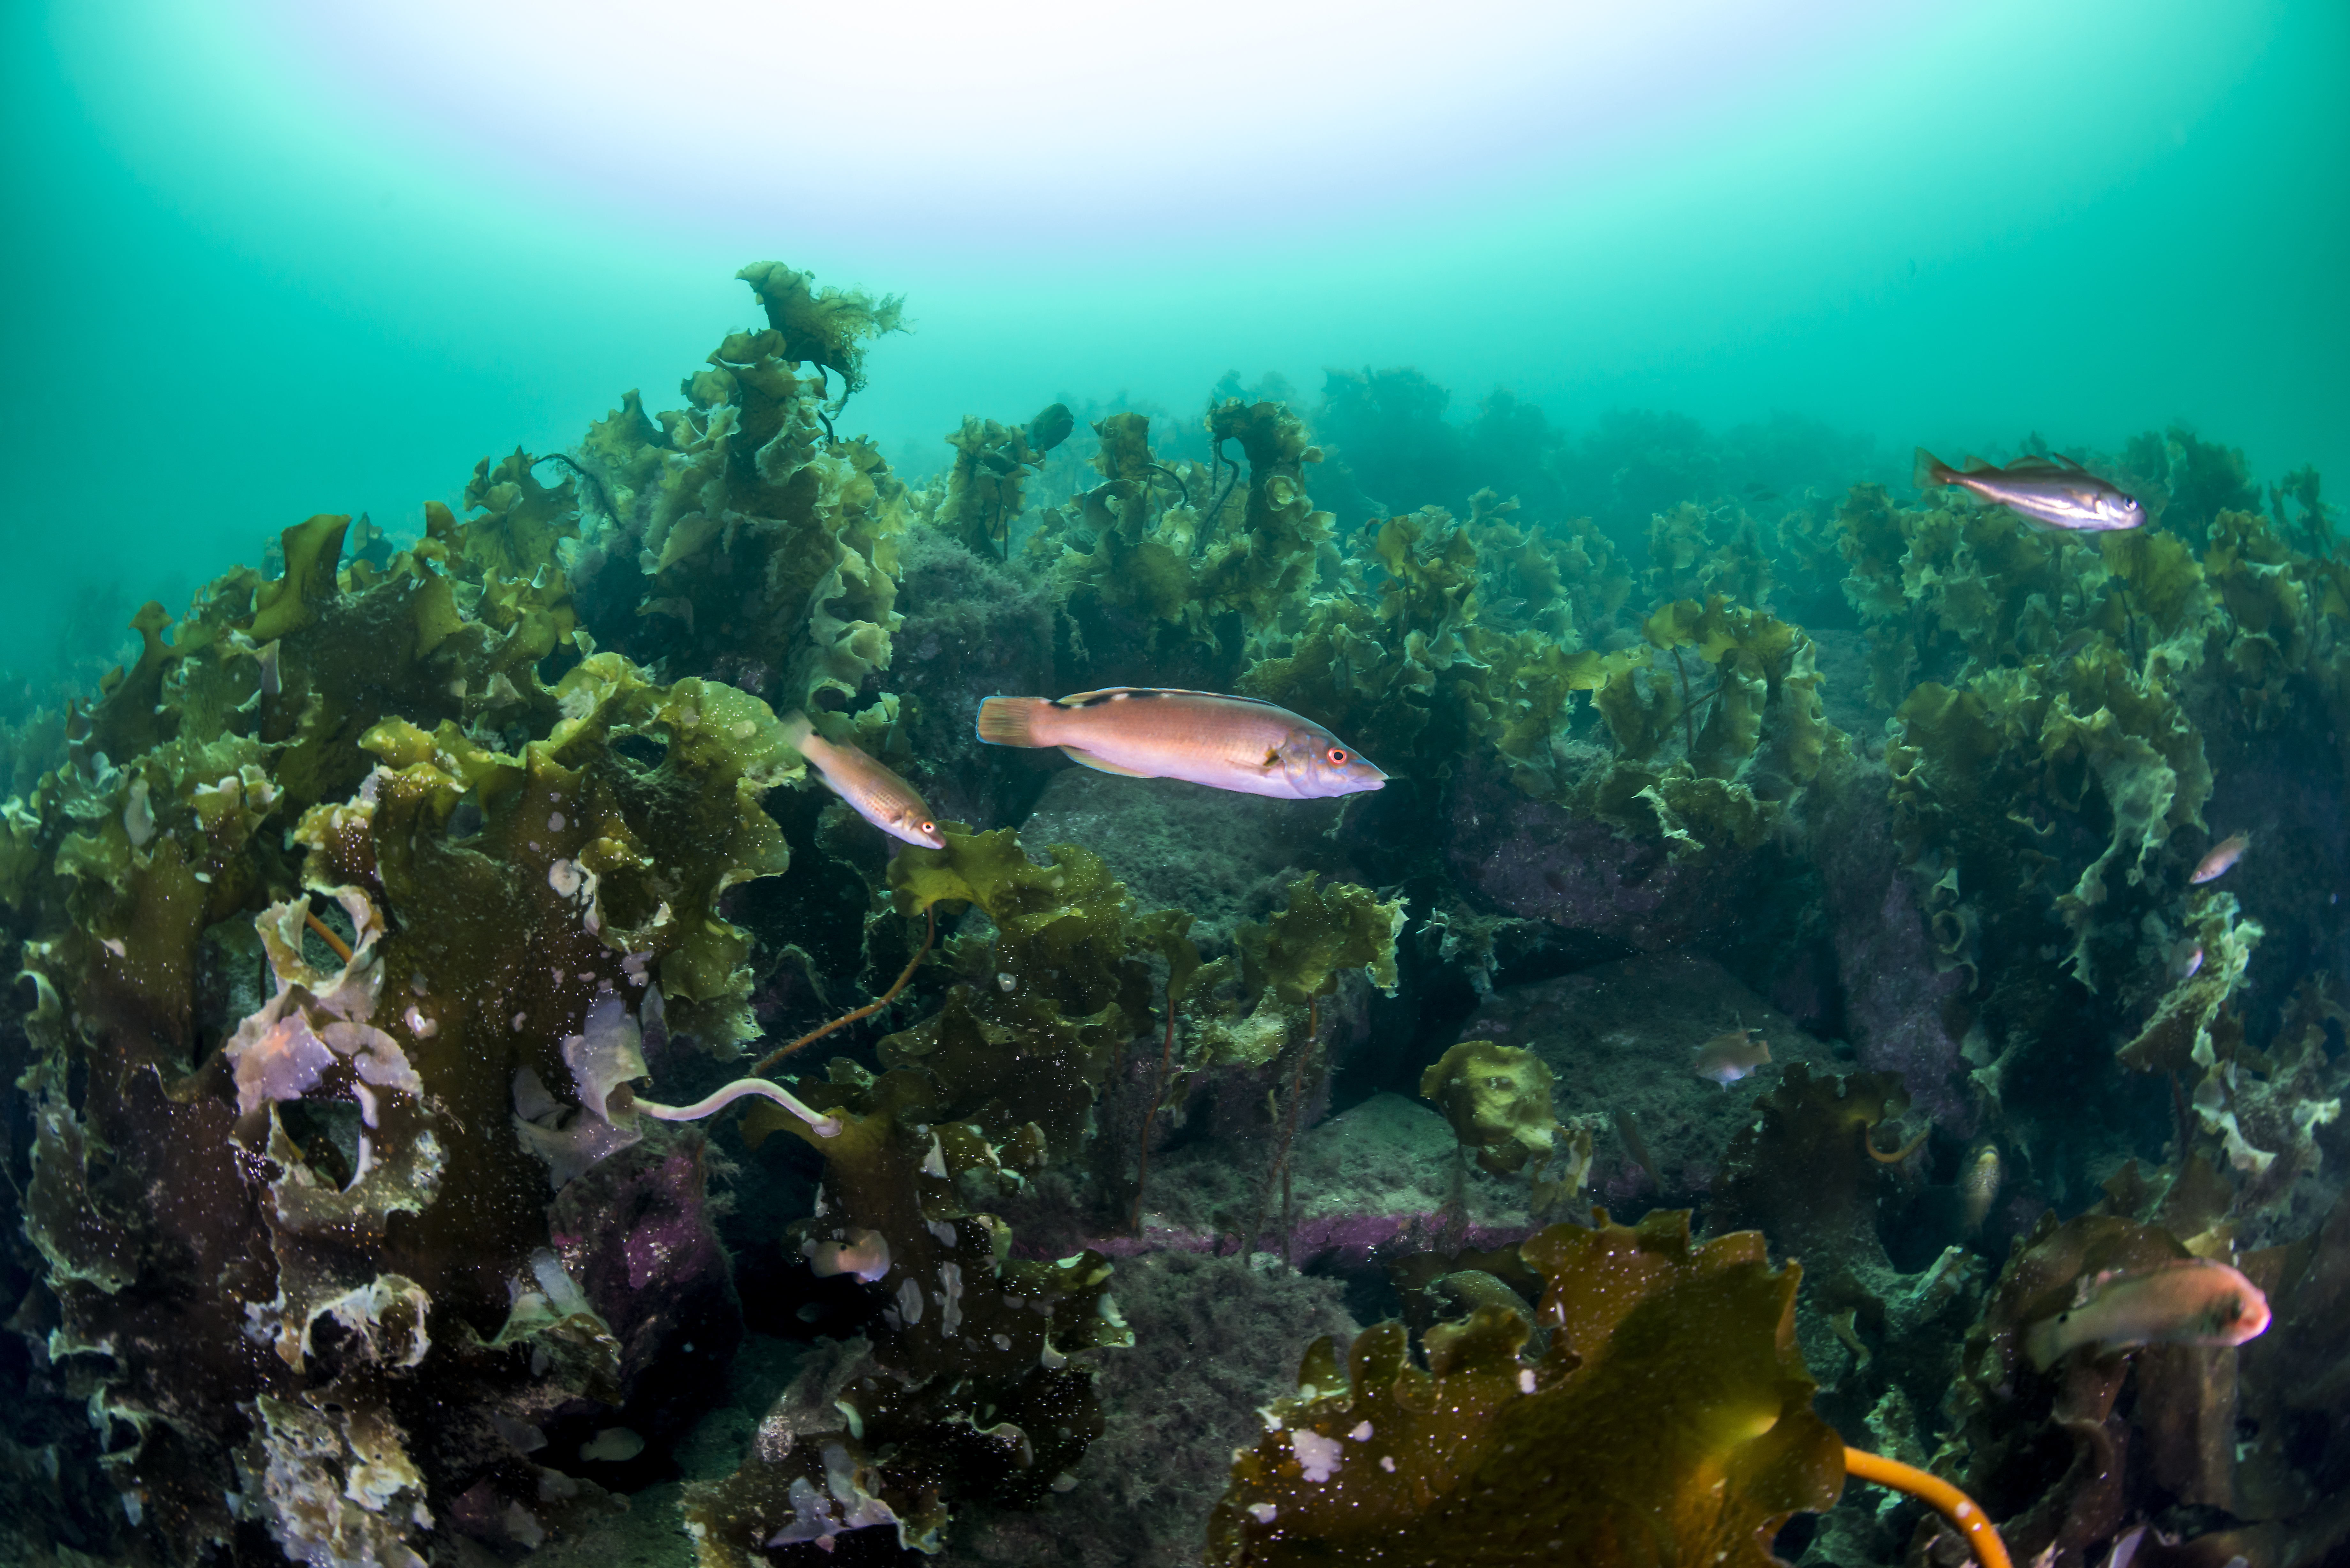 små røde fisk svømmer i stor mørkegrønn tareskog